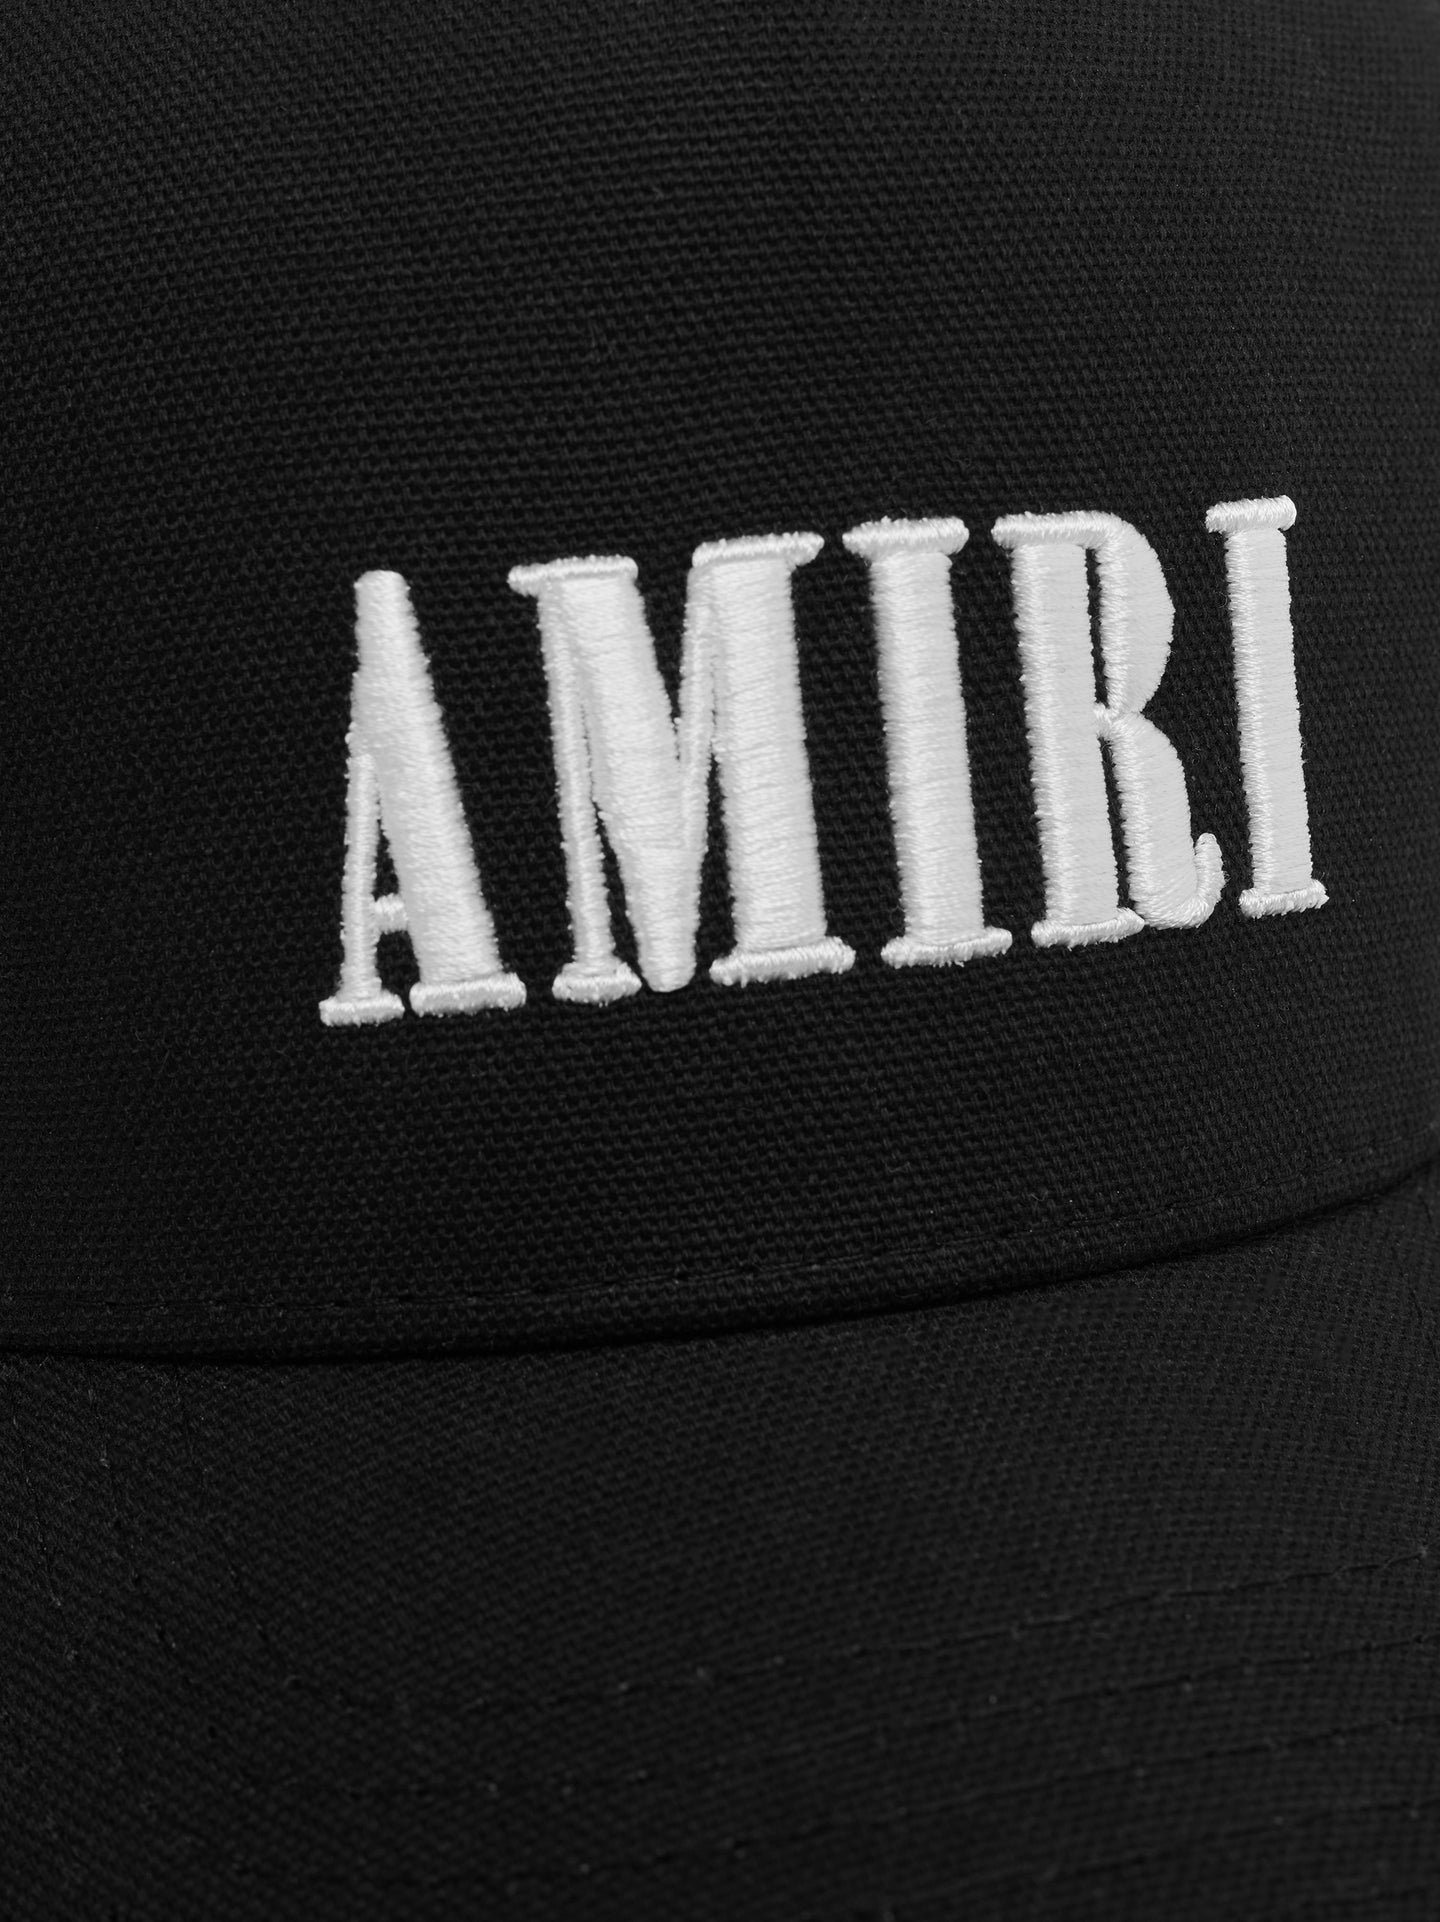 AMIRI CORE LOGO TRUCKER HAT - BLACK WHITE